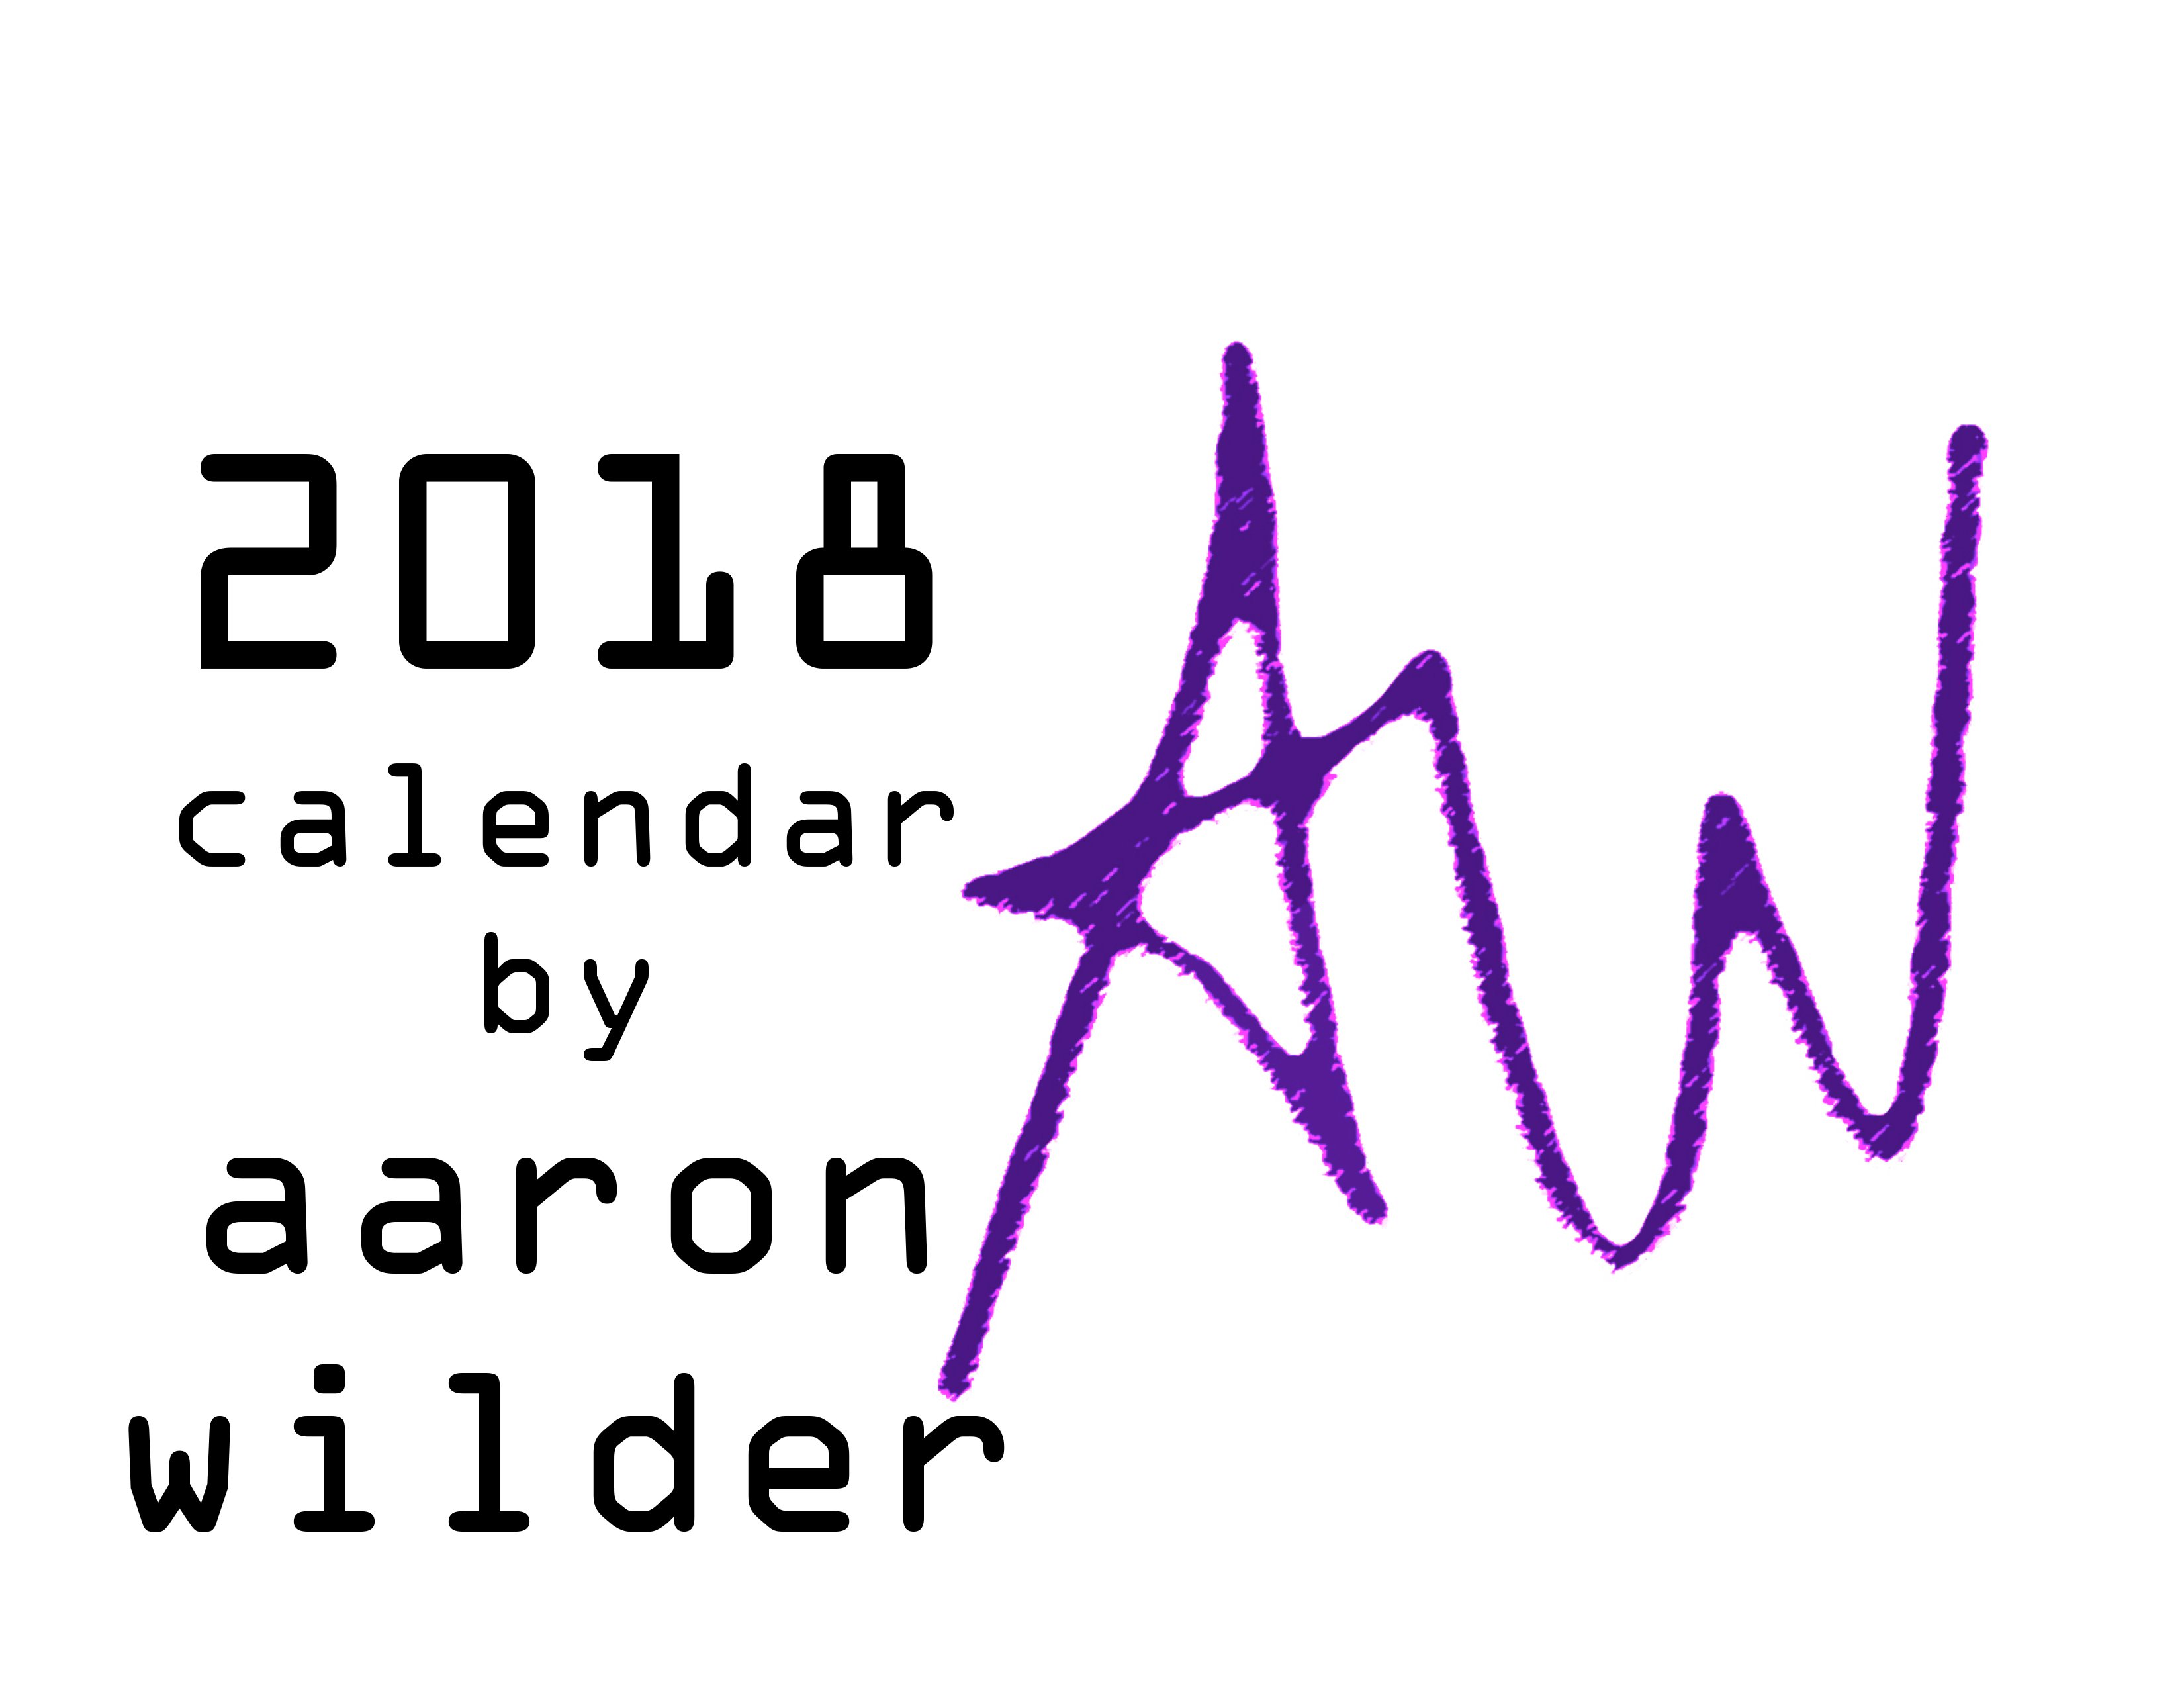 Aaron Wilder's 2018 Calendar